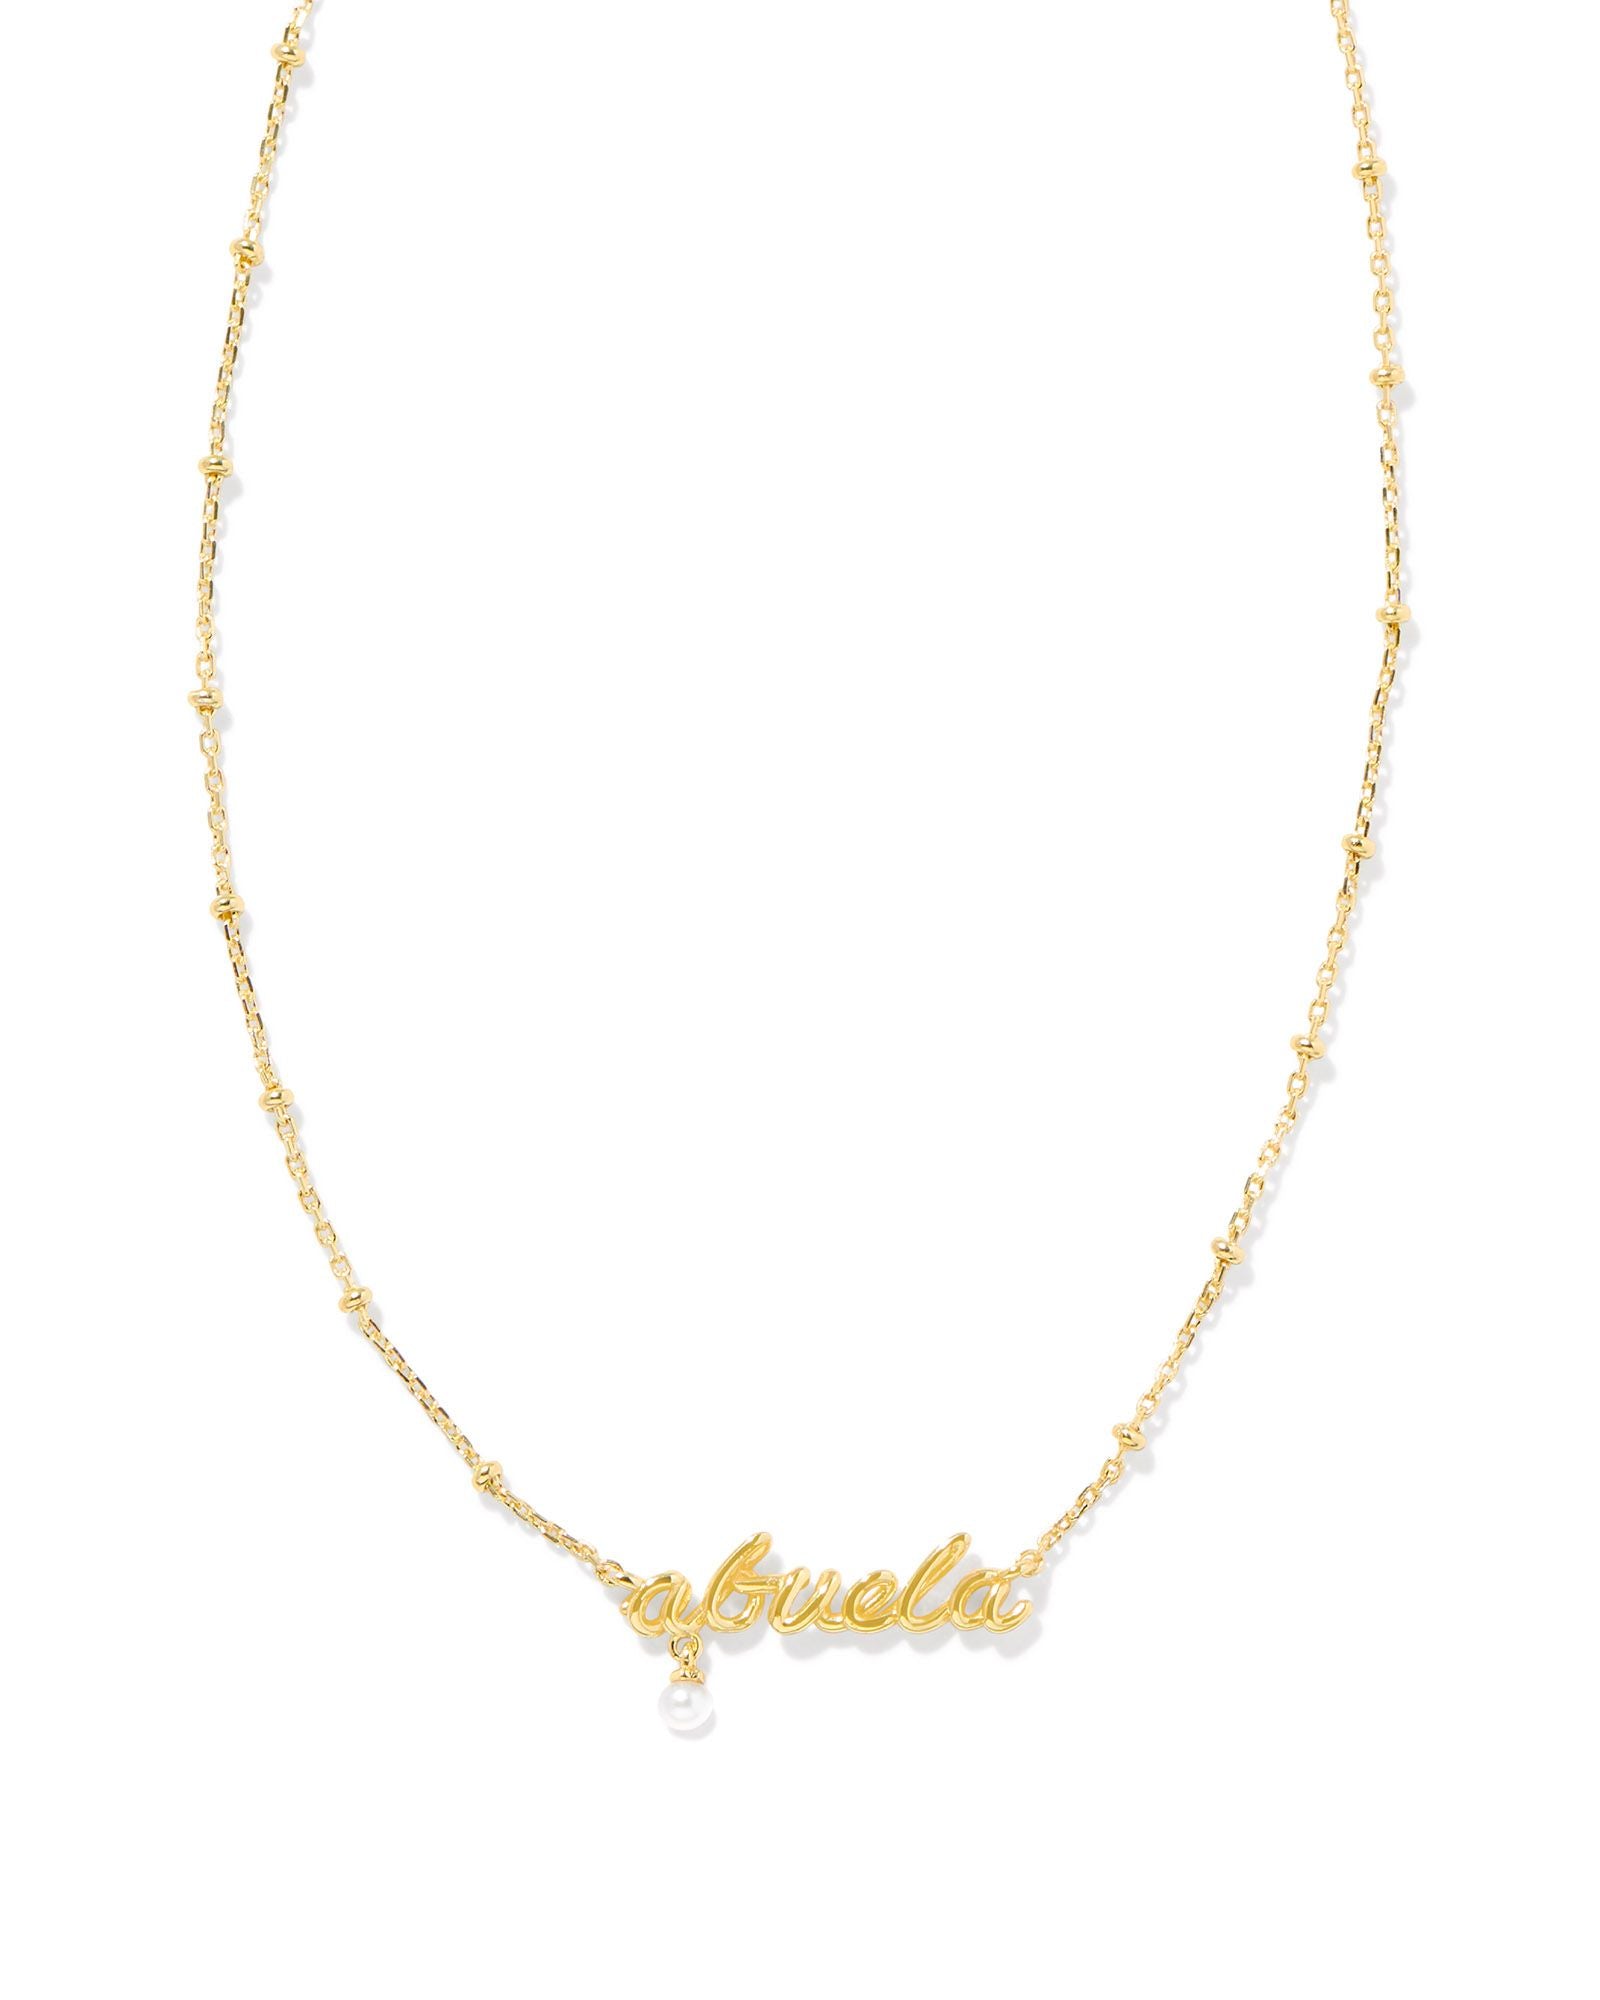 Abuela Script Pendant Necklace Gold w/White Pearl